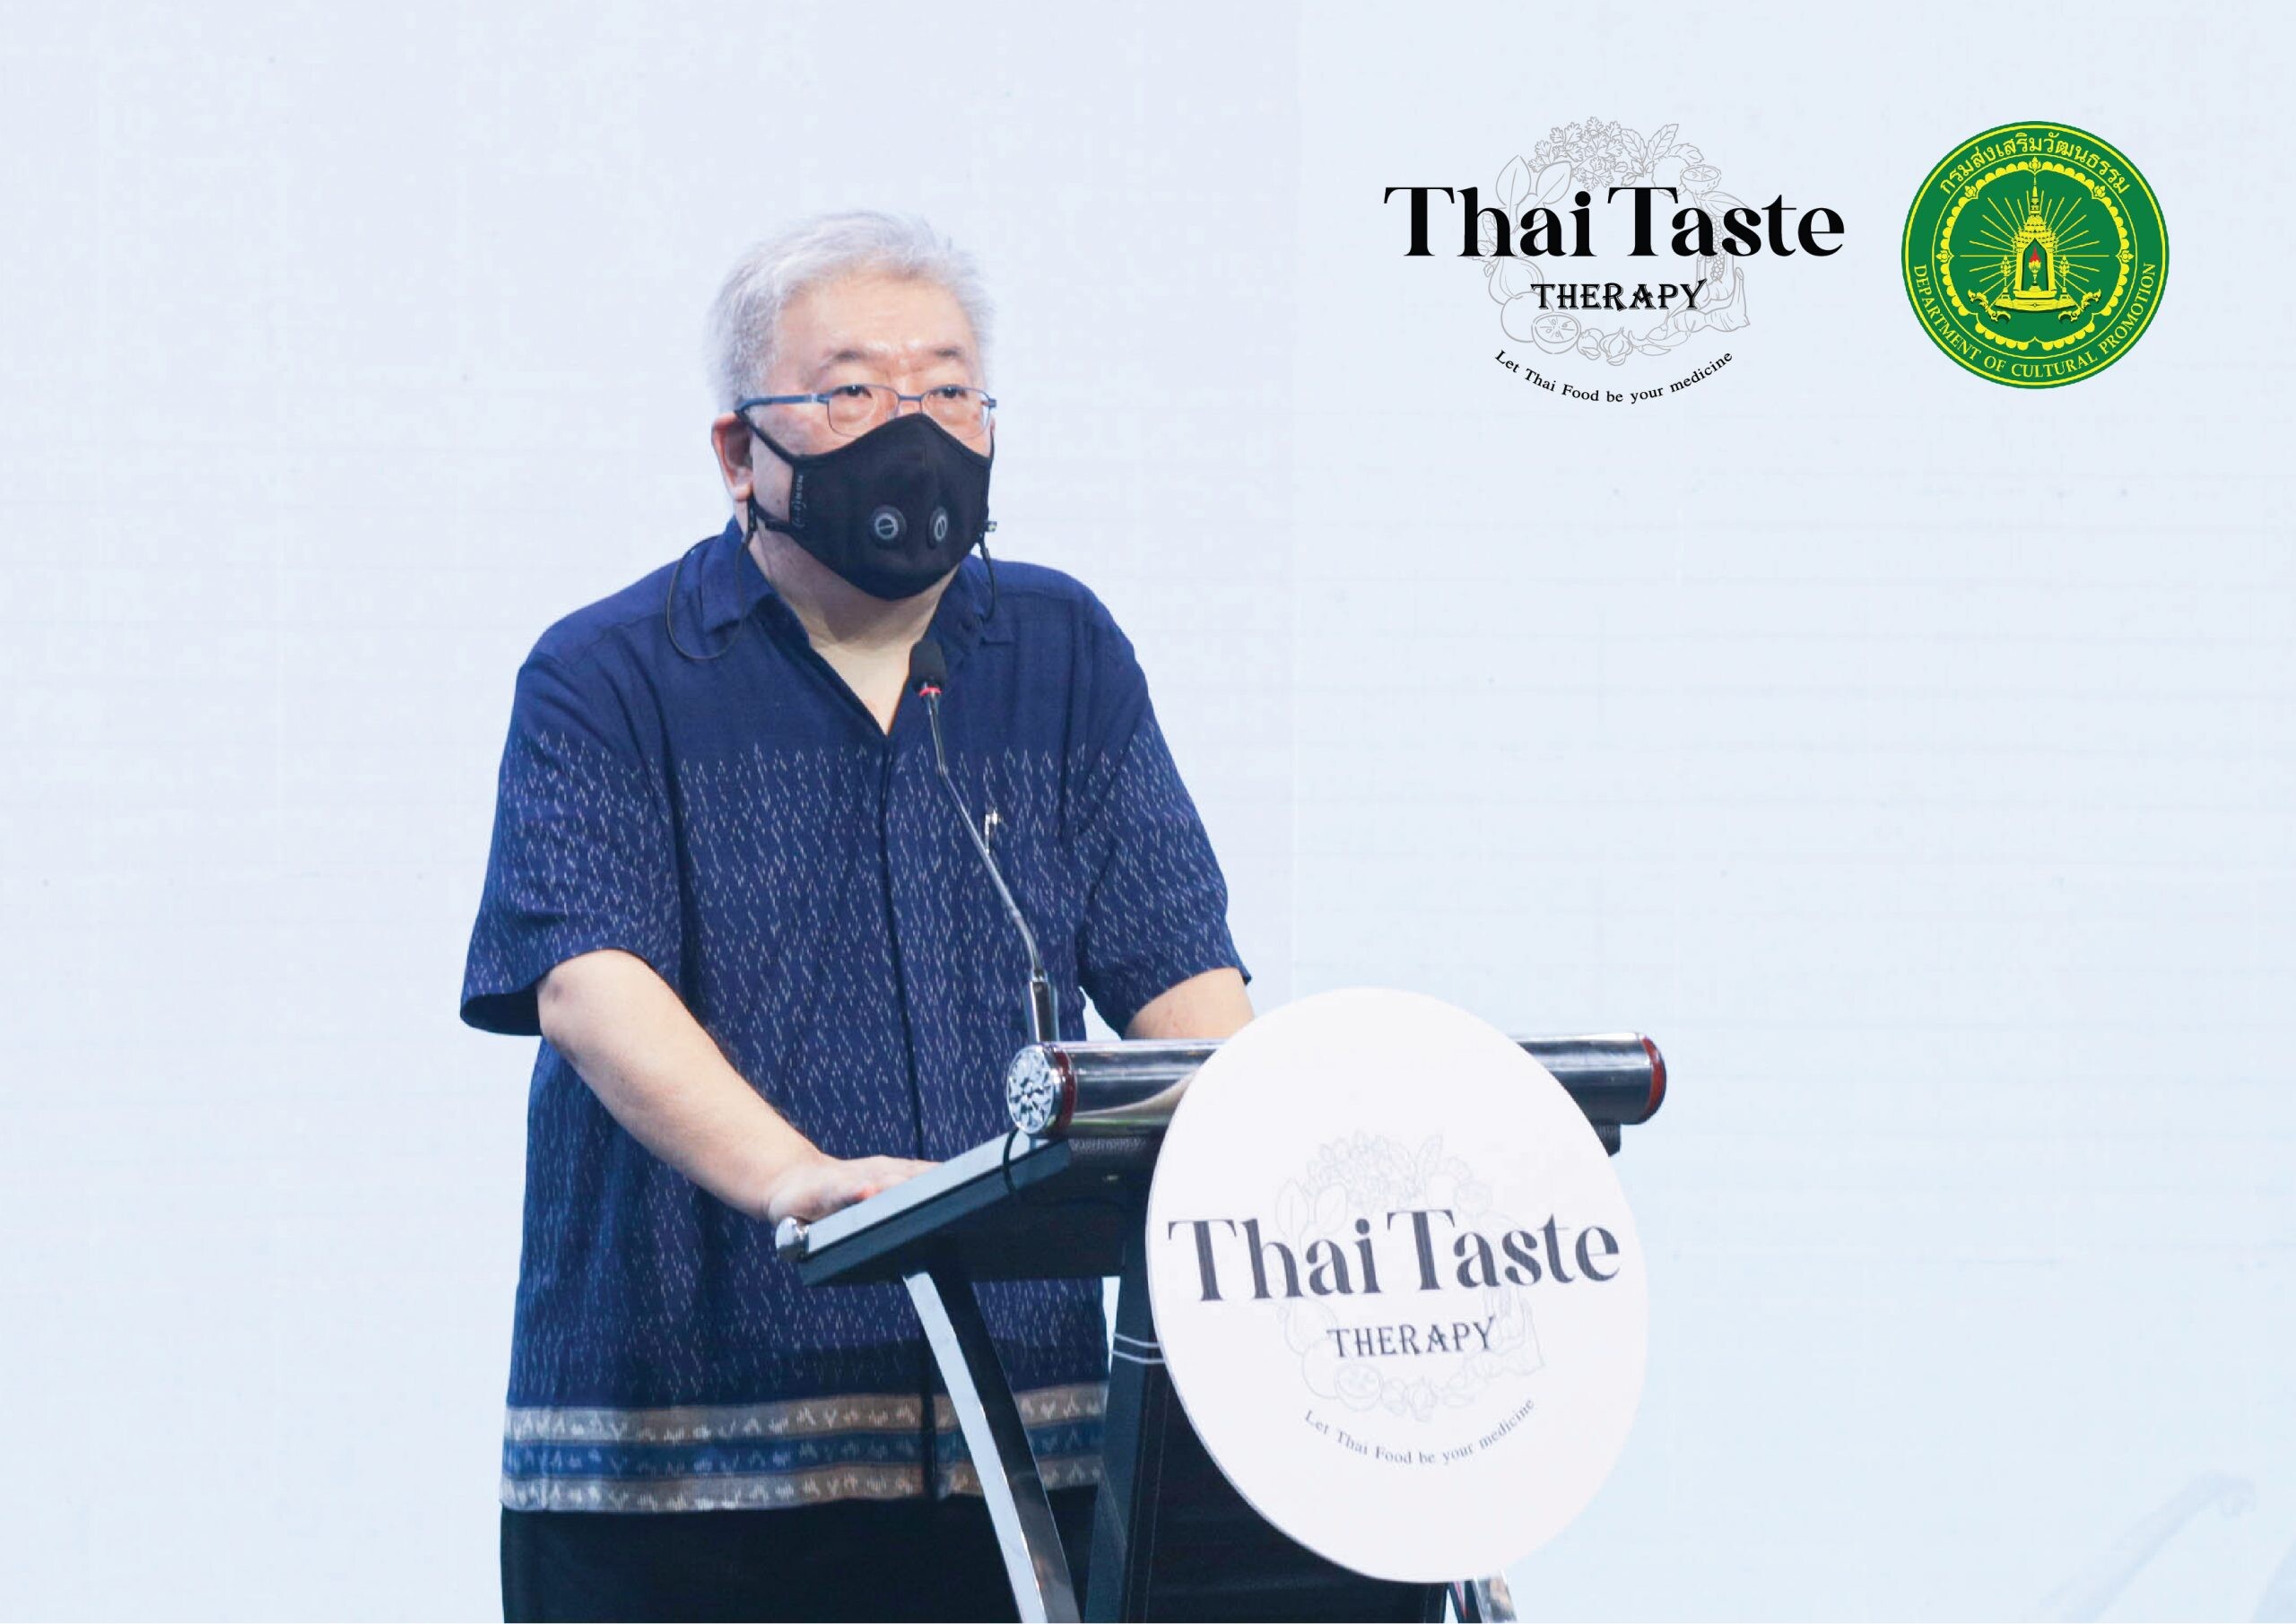 กรมส่งเสริมวัฒนธรรม กระทรวงวัฒนธรรม ผนึกกำลังภาครัฐและเอกชน ส่งออกวัฒนธรรมอาหารไทยมิติใหม่ Thai Taste Therapy อาหารไทยเป็น "ยาที่อร่อยที่สุดในโลก" ตอบโจทย์เทรนด์คนรักสุขภาพทั่วโลก